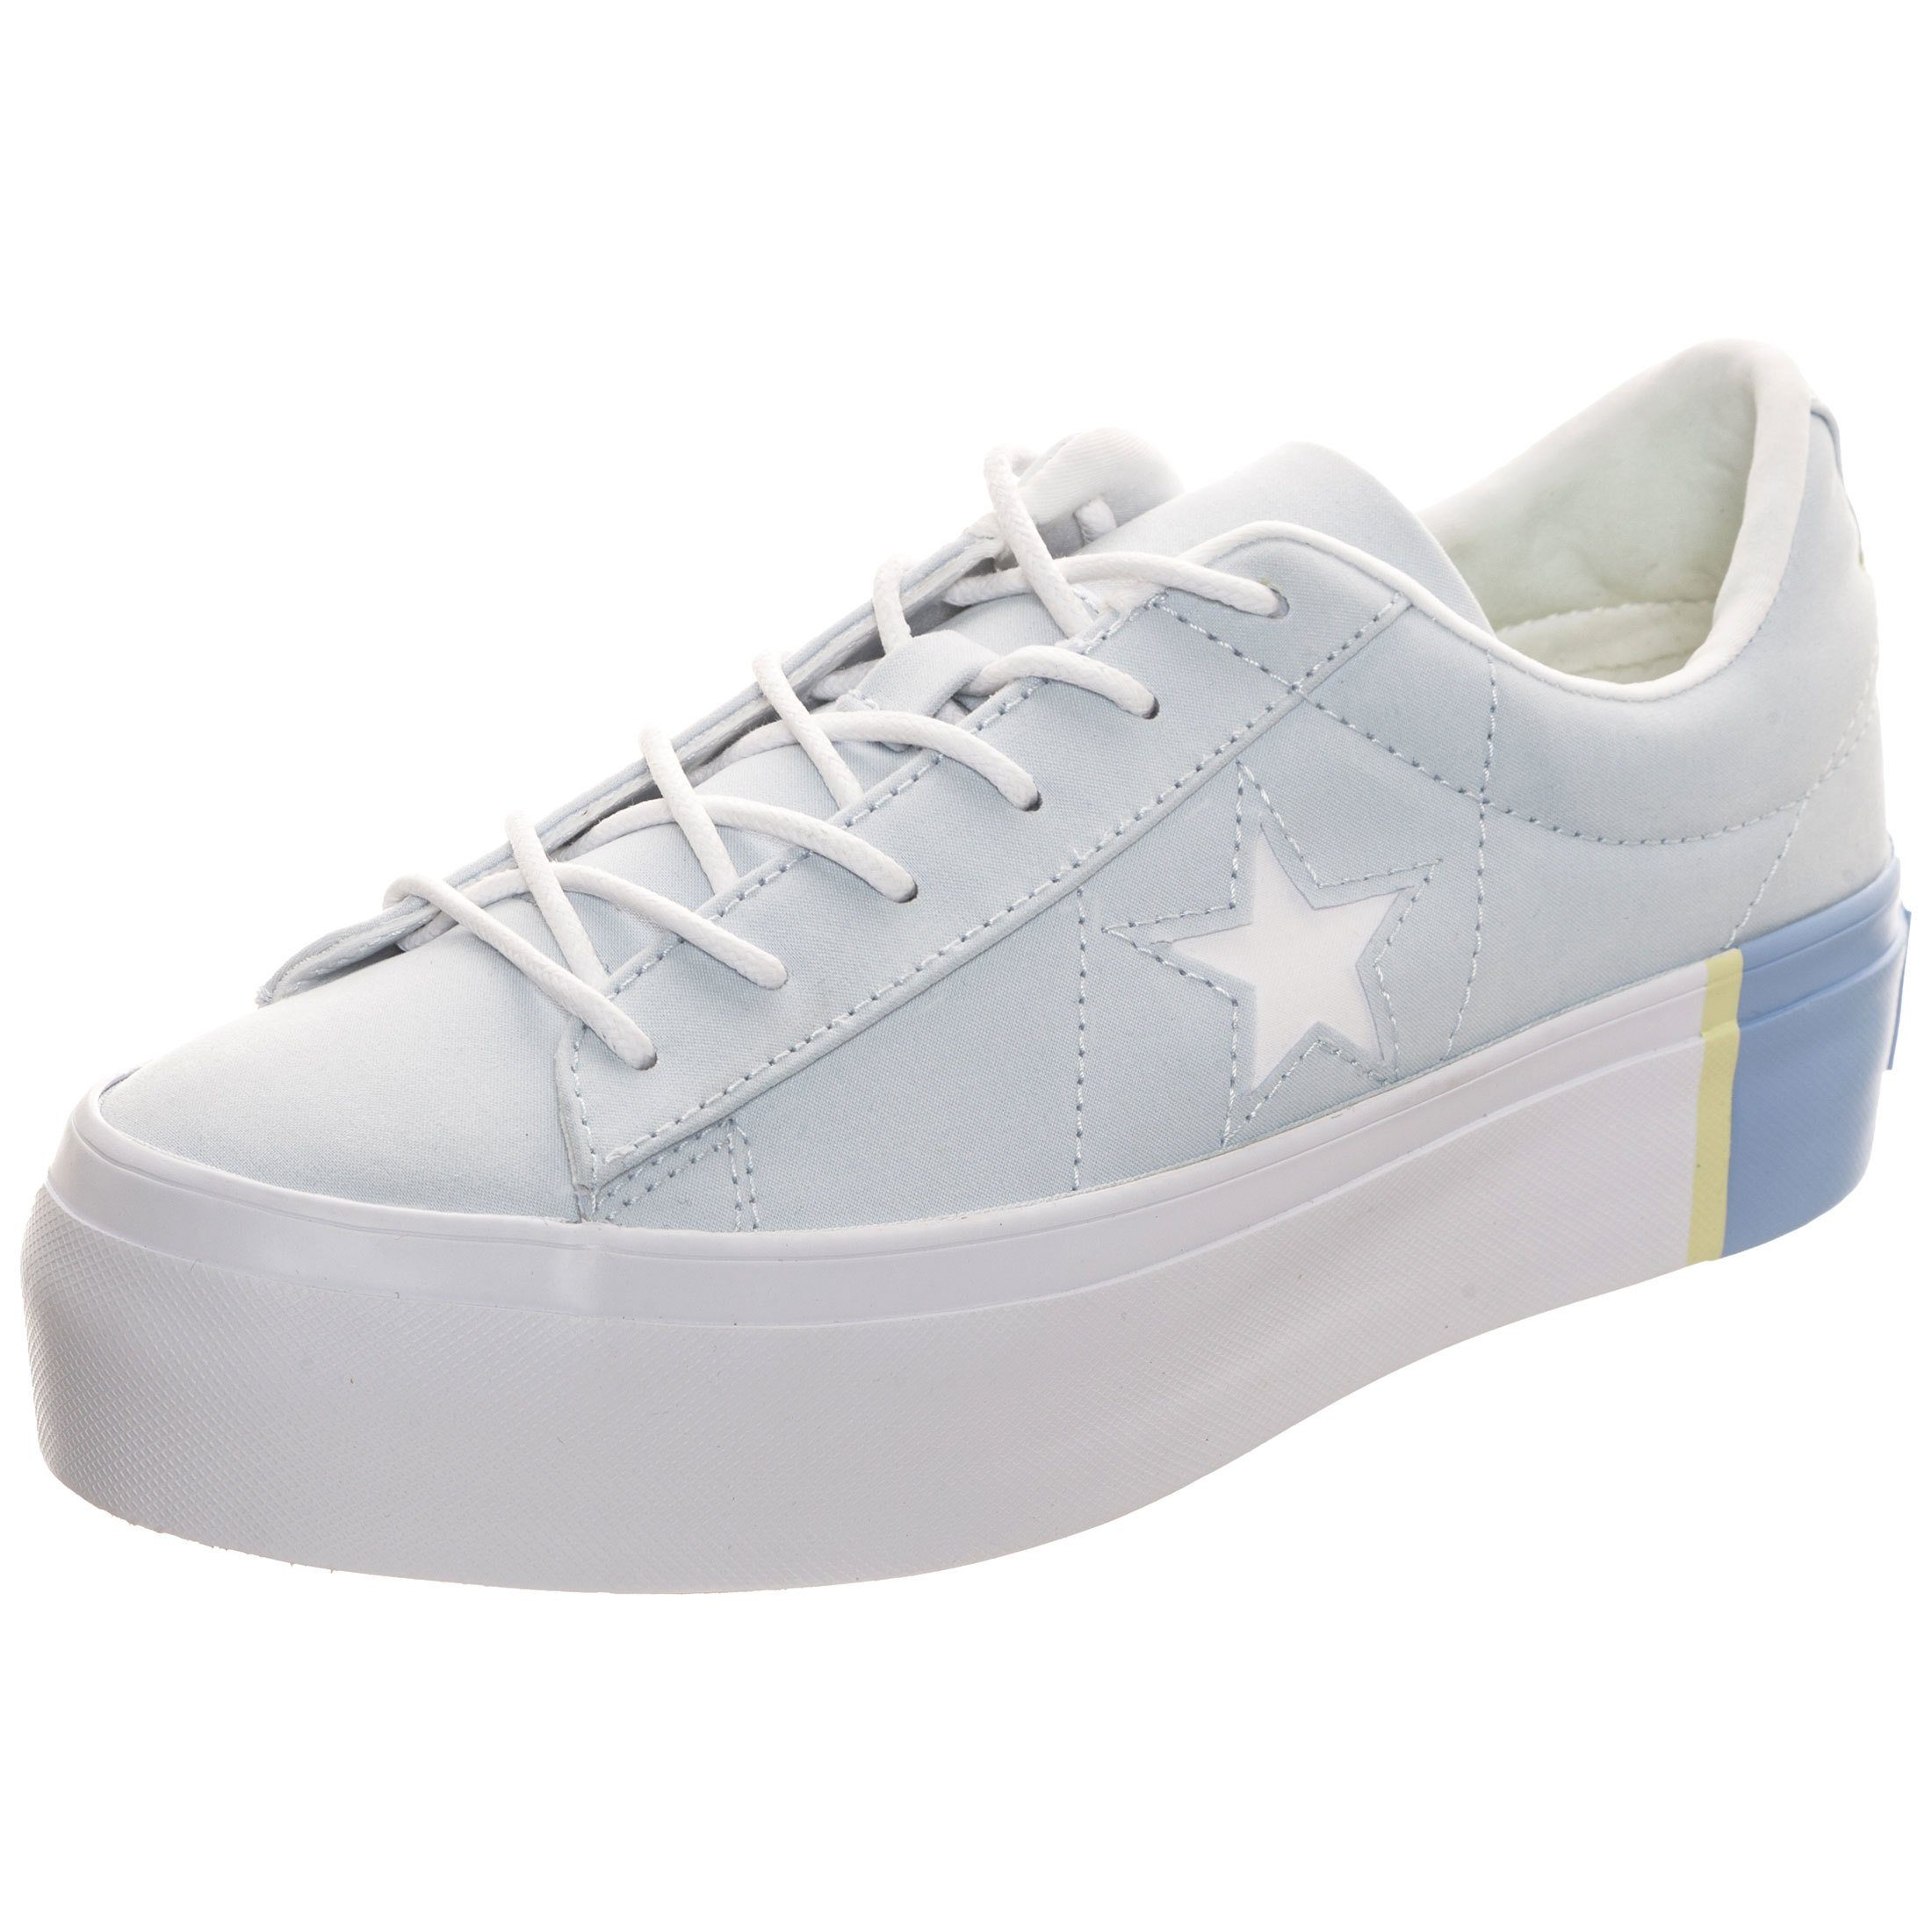 Converse »Cons One Star Platform« Sneaker kaufen | OTTO